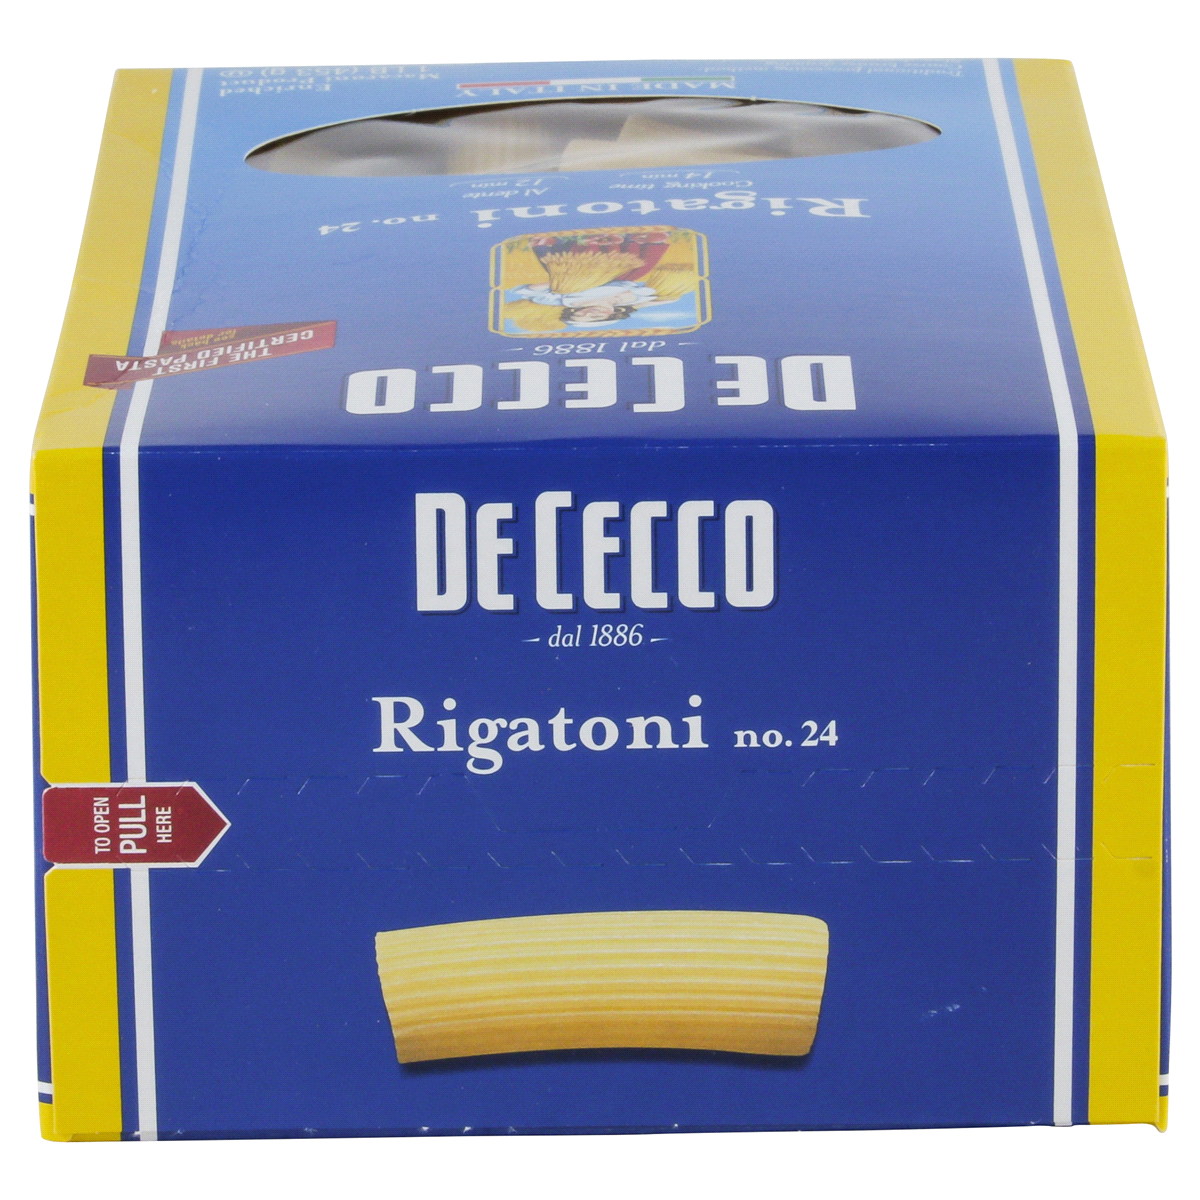 De Cecco Rigatoni No. 24 - Shop Pasta at H-E-B